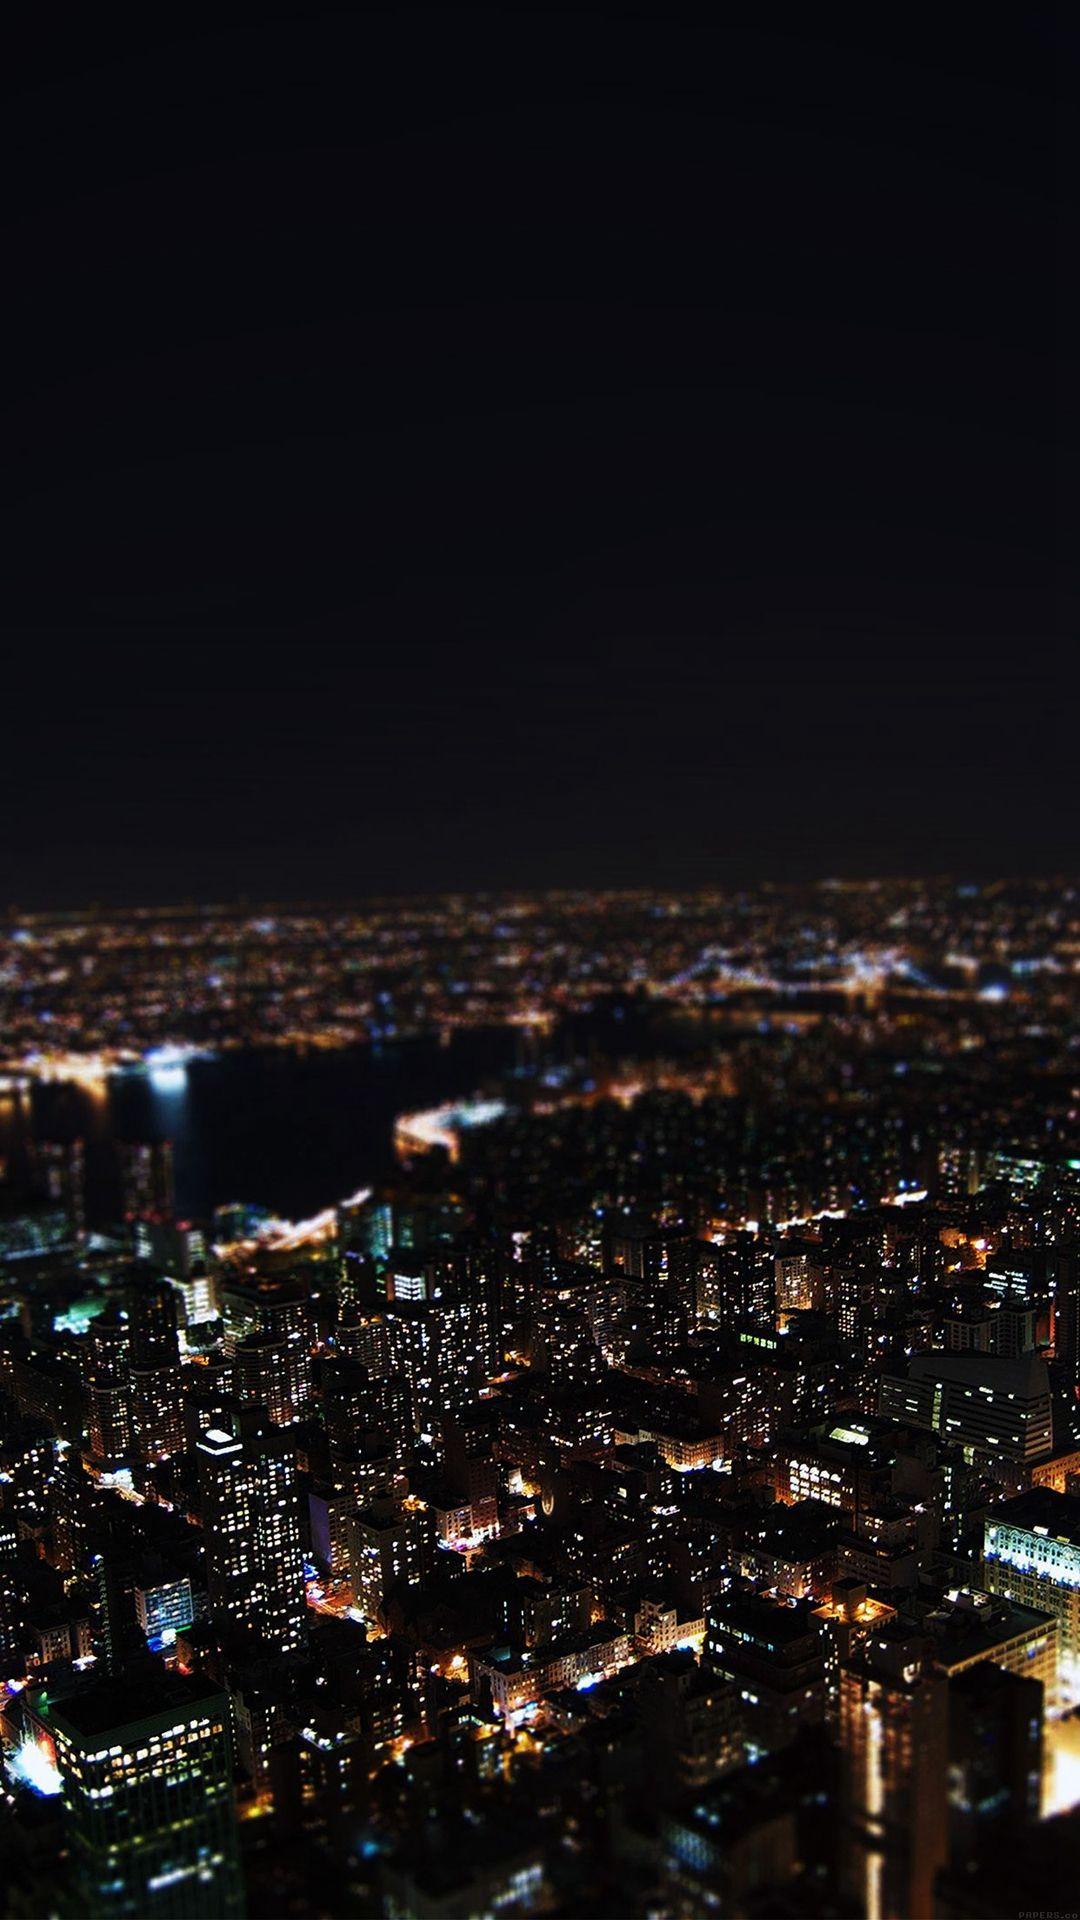 Dark Night City Building Skyview iPhone 6 wallpaper. Wallpaper